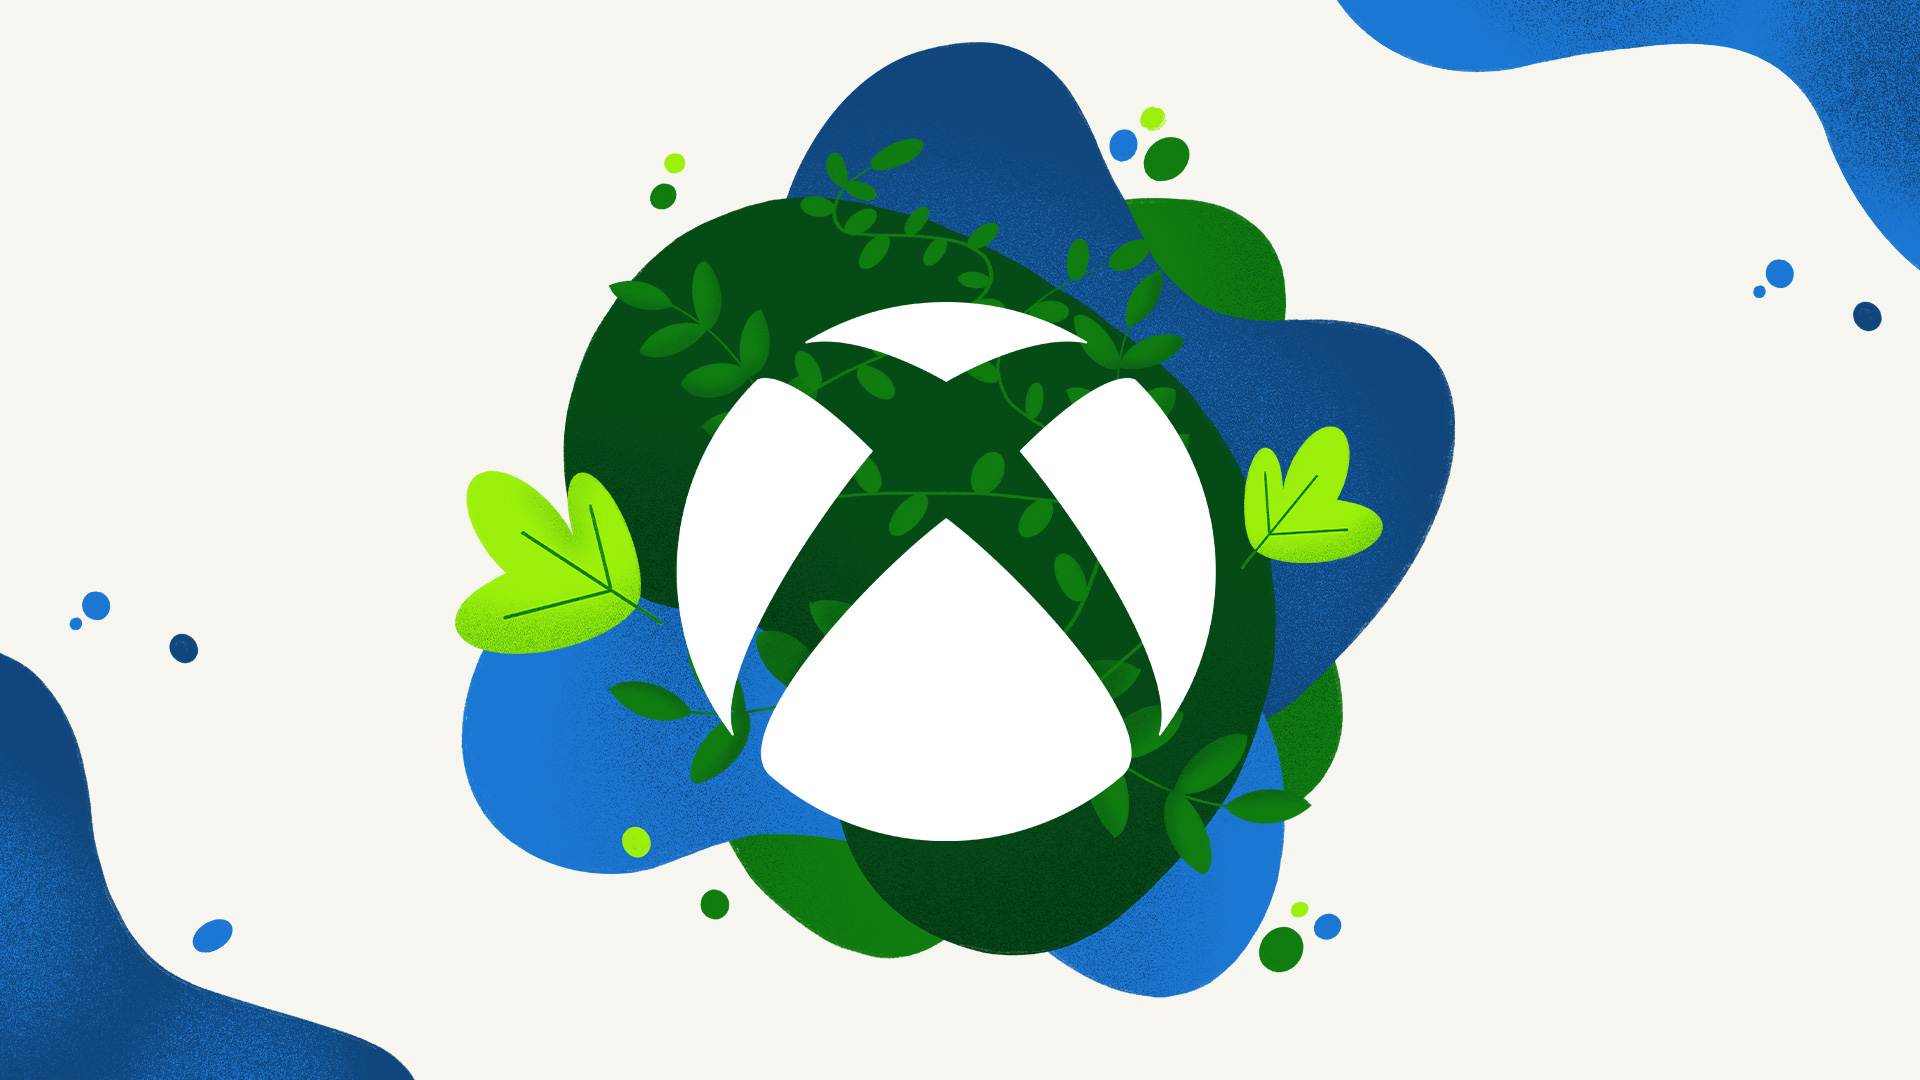 “Cuando todos reducen las emisiones, todos en el planeta ganan”: explicación de las nuevas herramientas de desarrollo de juegos de Xbox